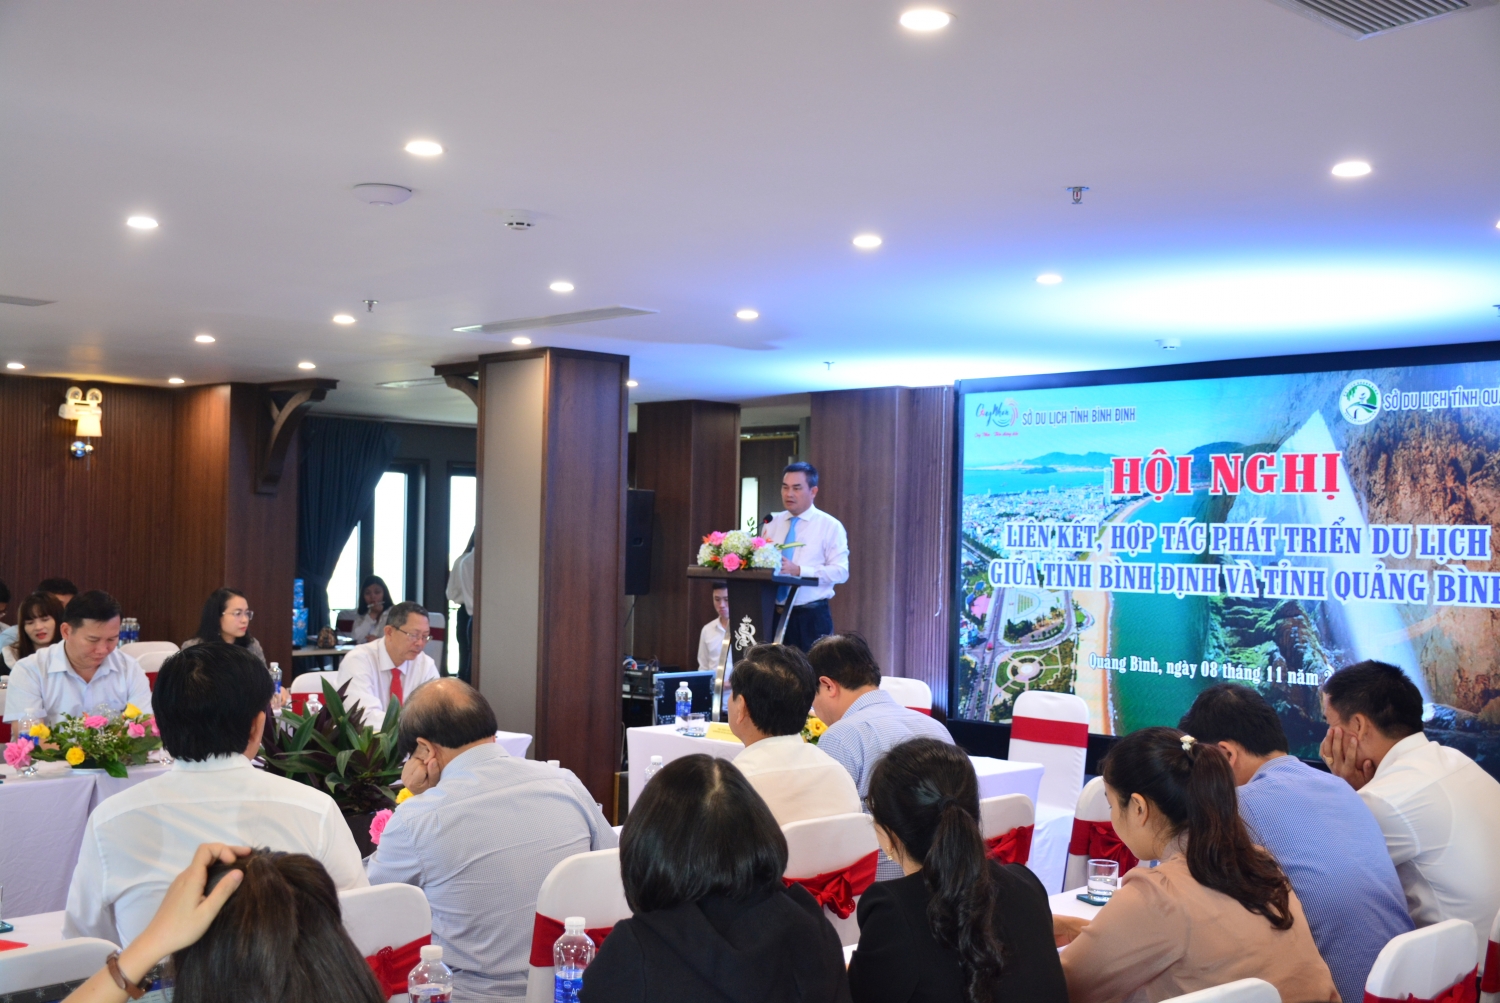 Hợp tác phát triển du lịch hai tỉnh Quảng Bình - Bình Định